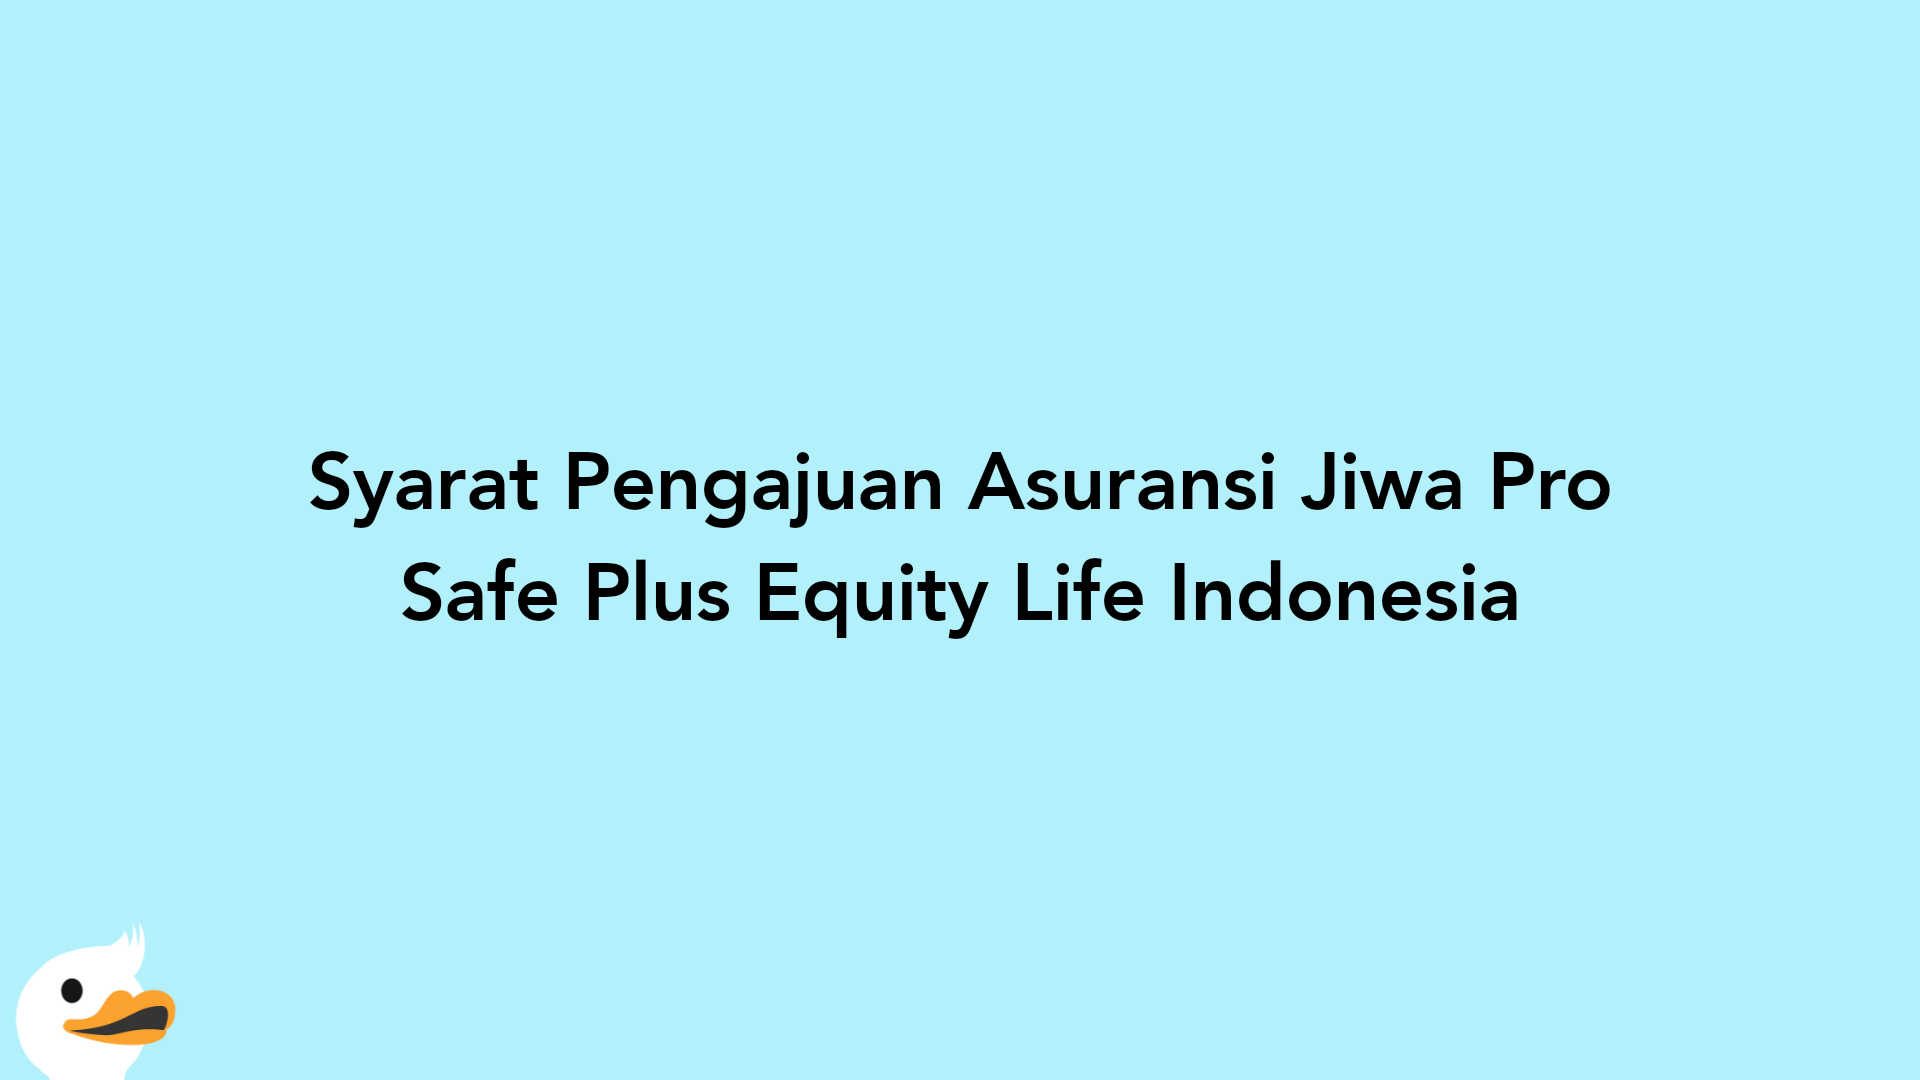 Syarat Pengajuan Asuransi Jiwa Pro Safe Plus Equity Life Indonesia